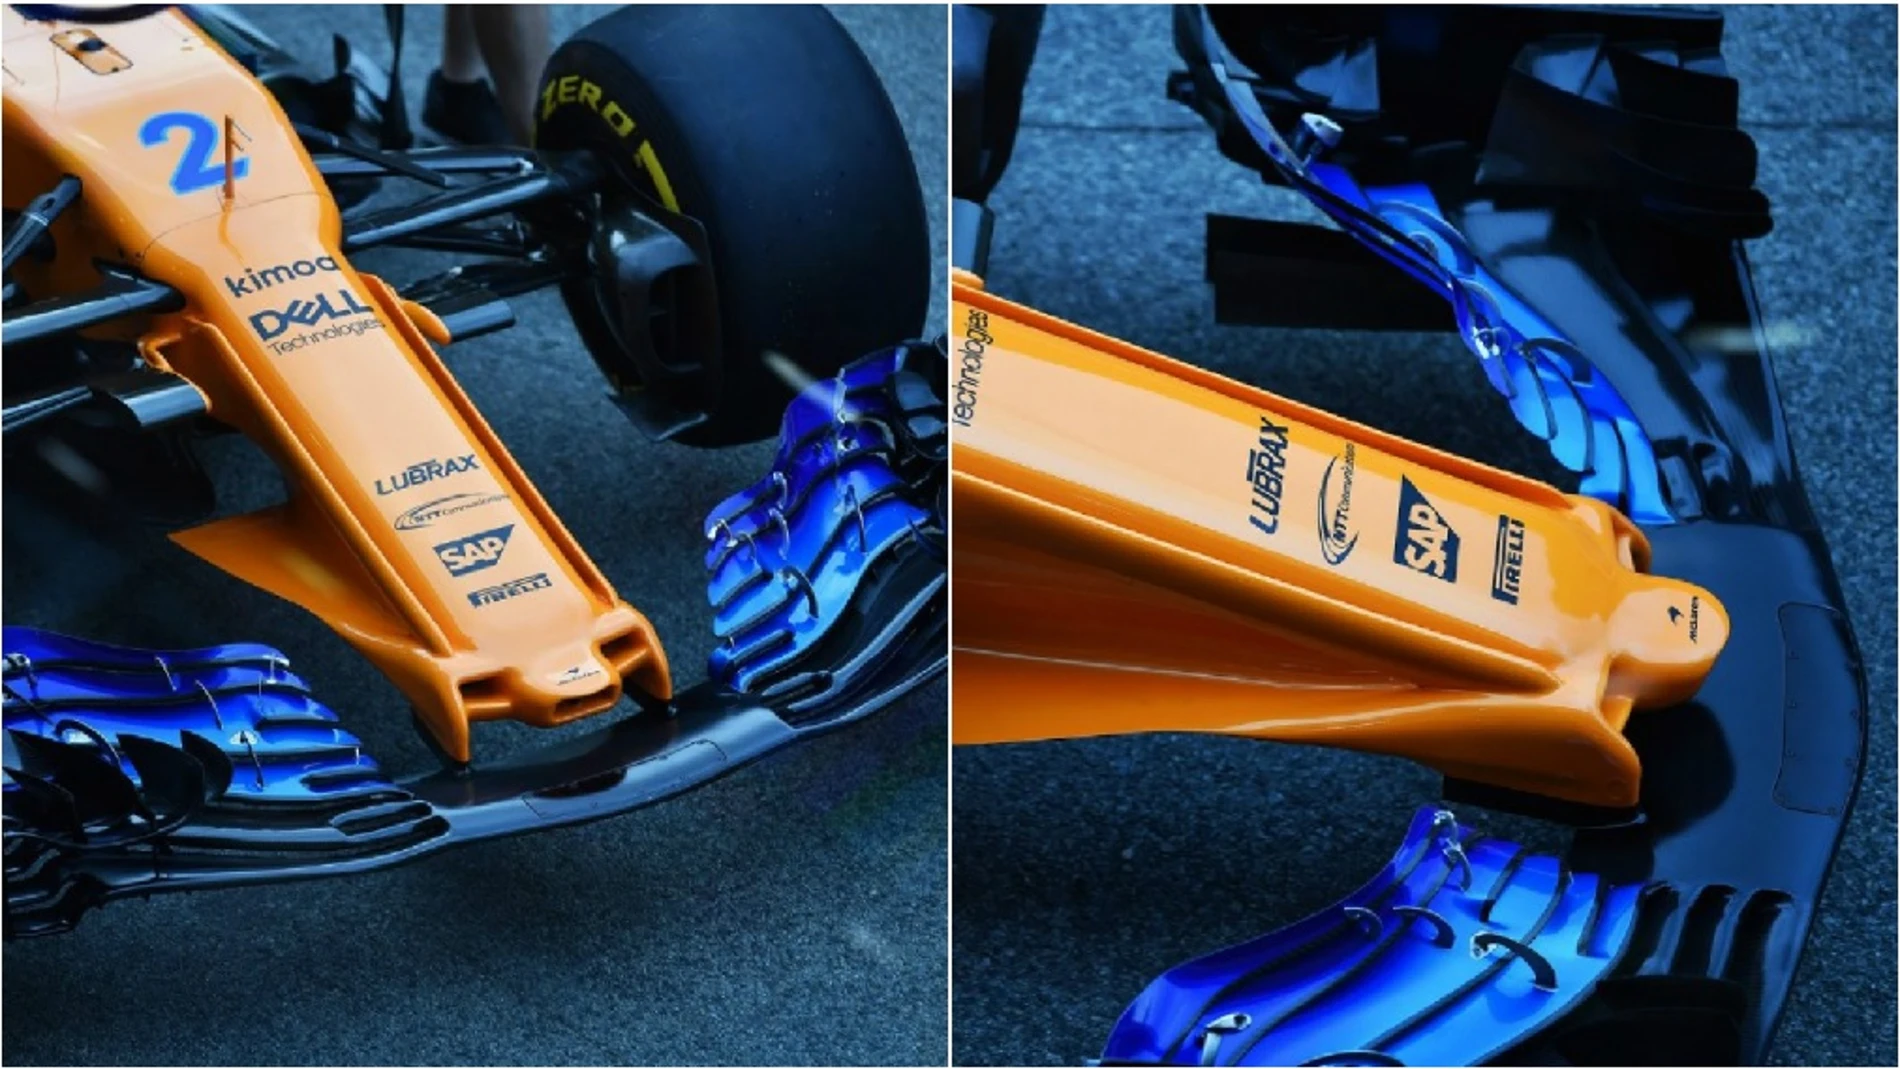 El nuevo morro de McLaren